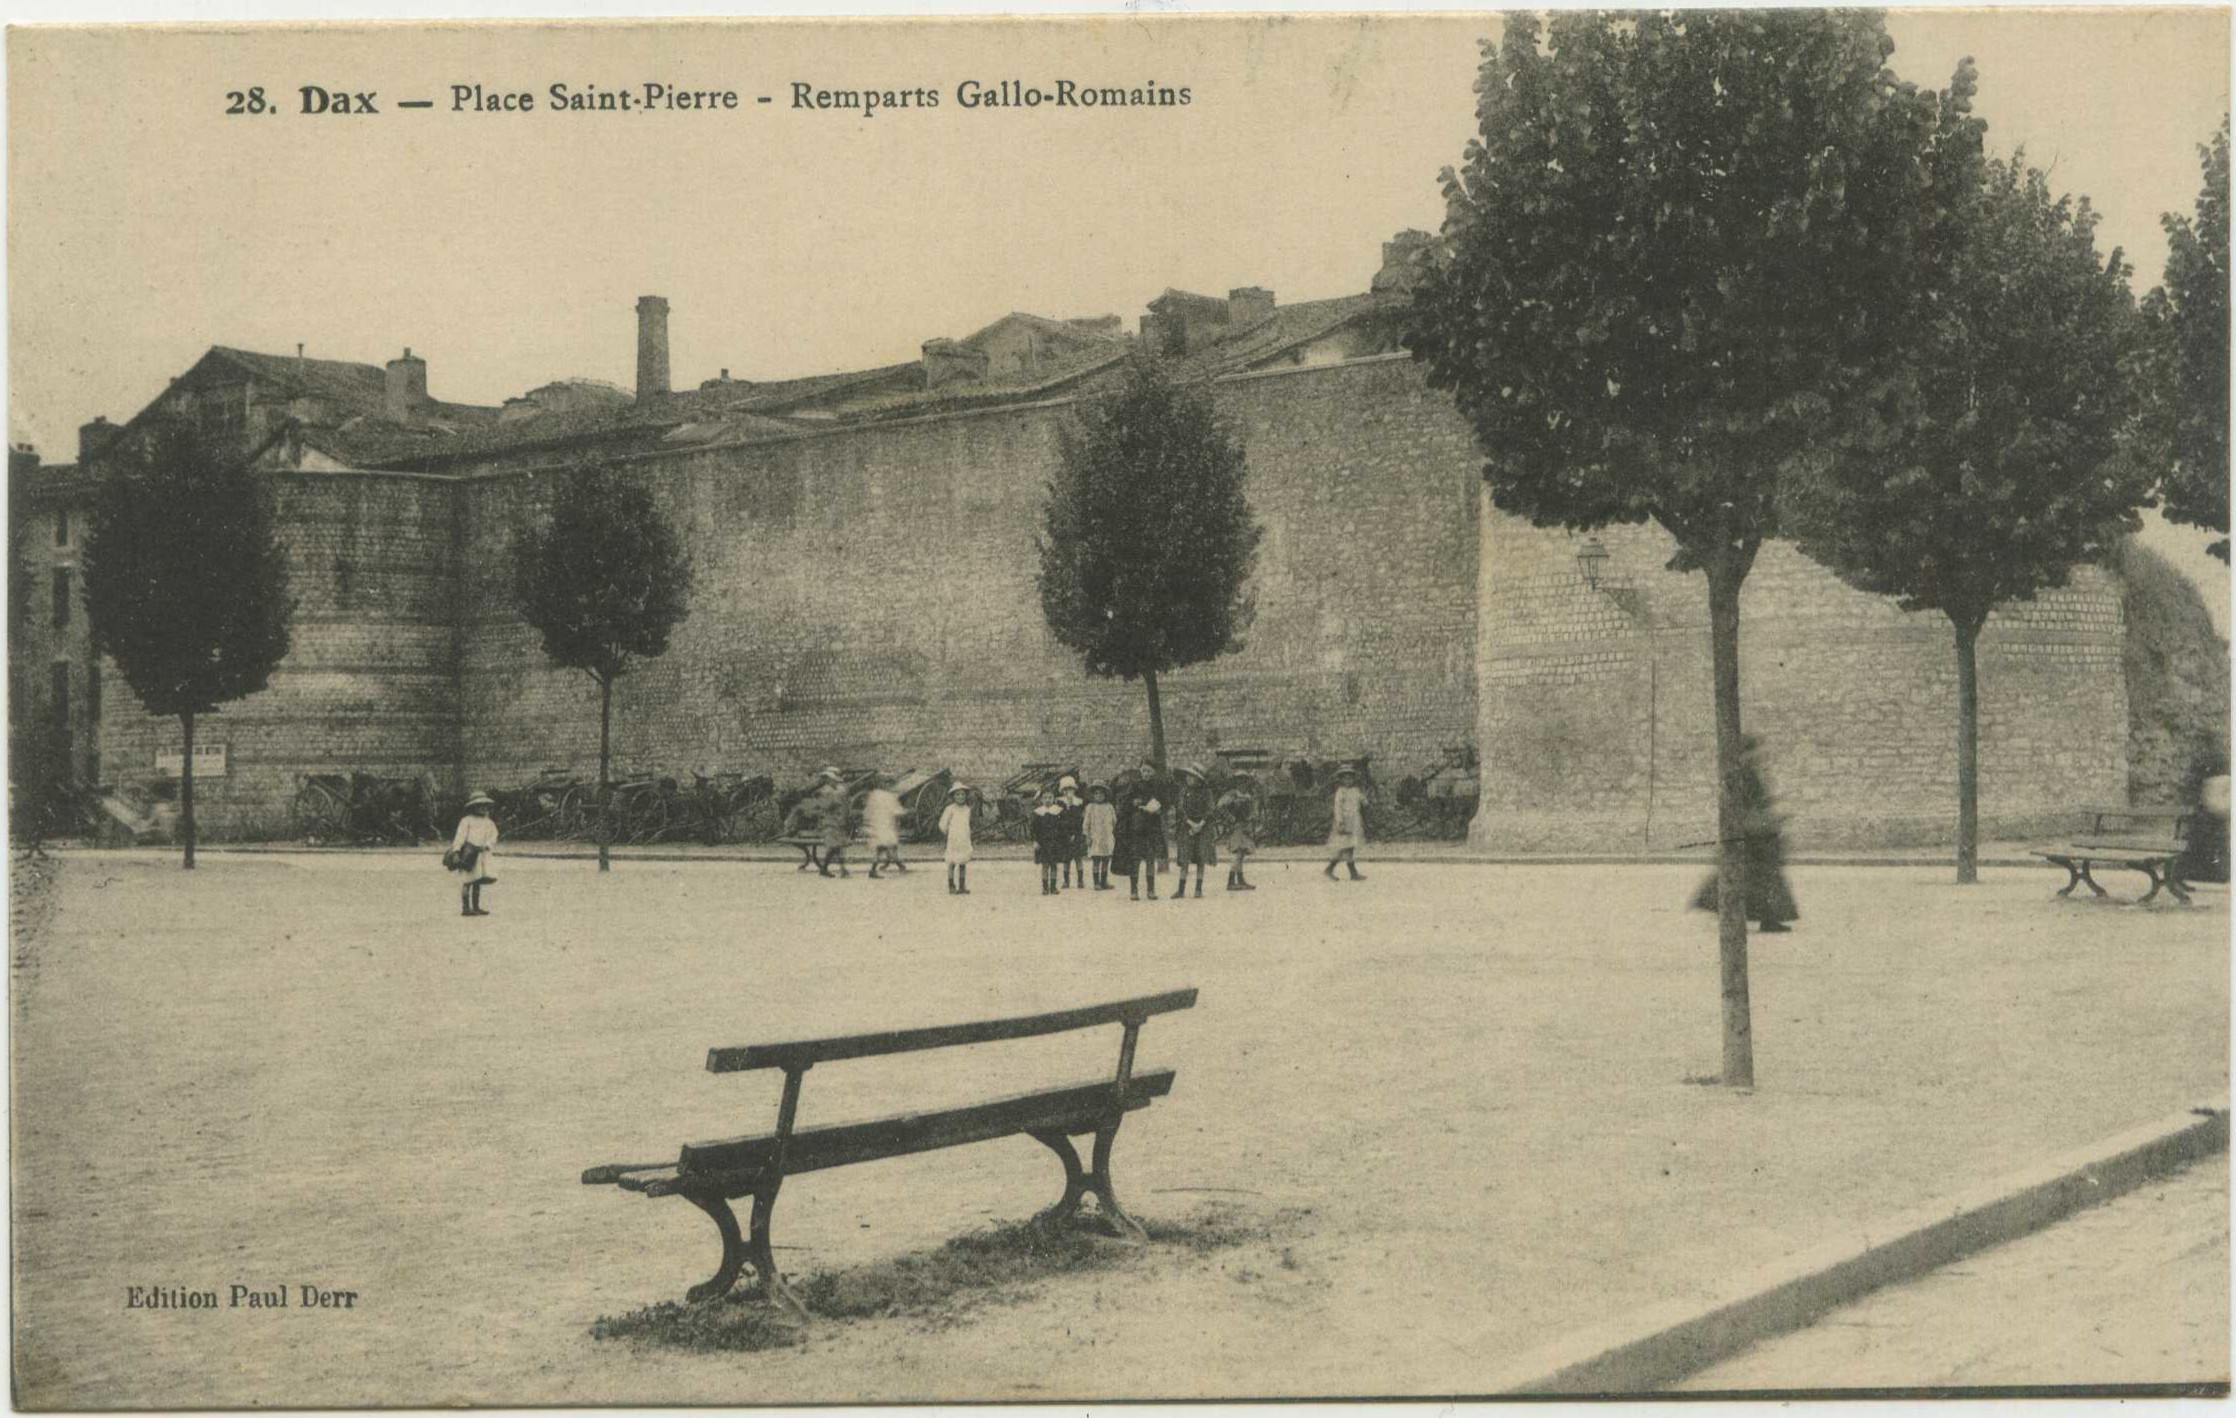 Dax - Place Saint-Pierre - Remparts Gallo-Romains